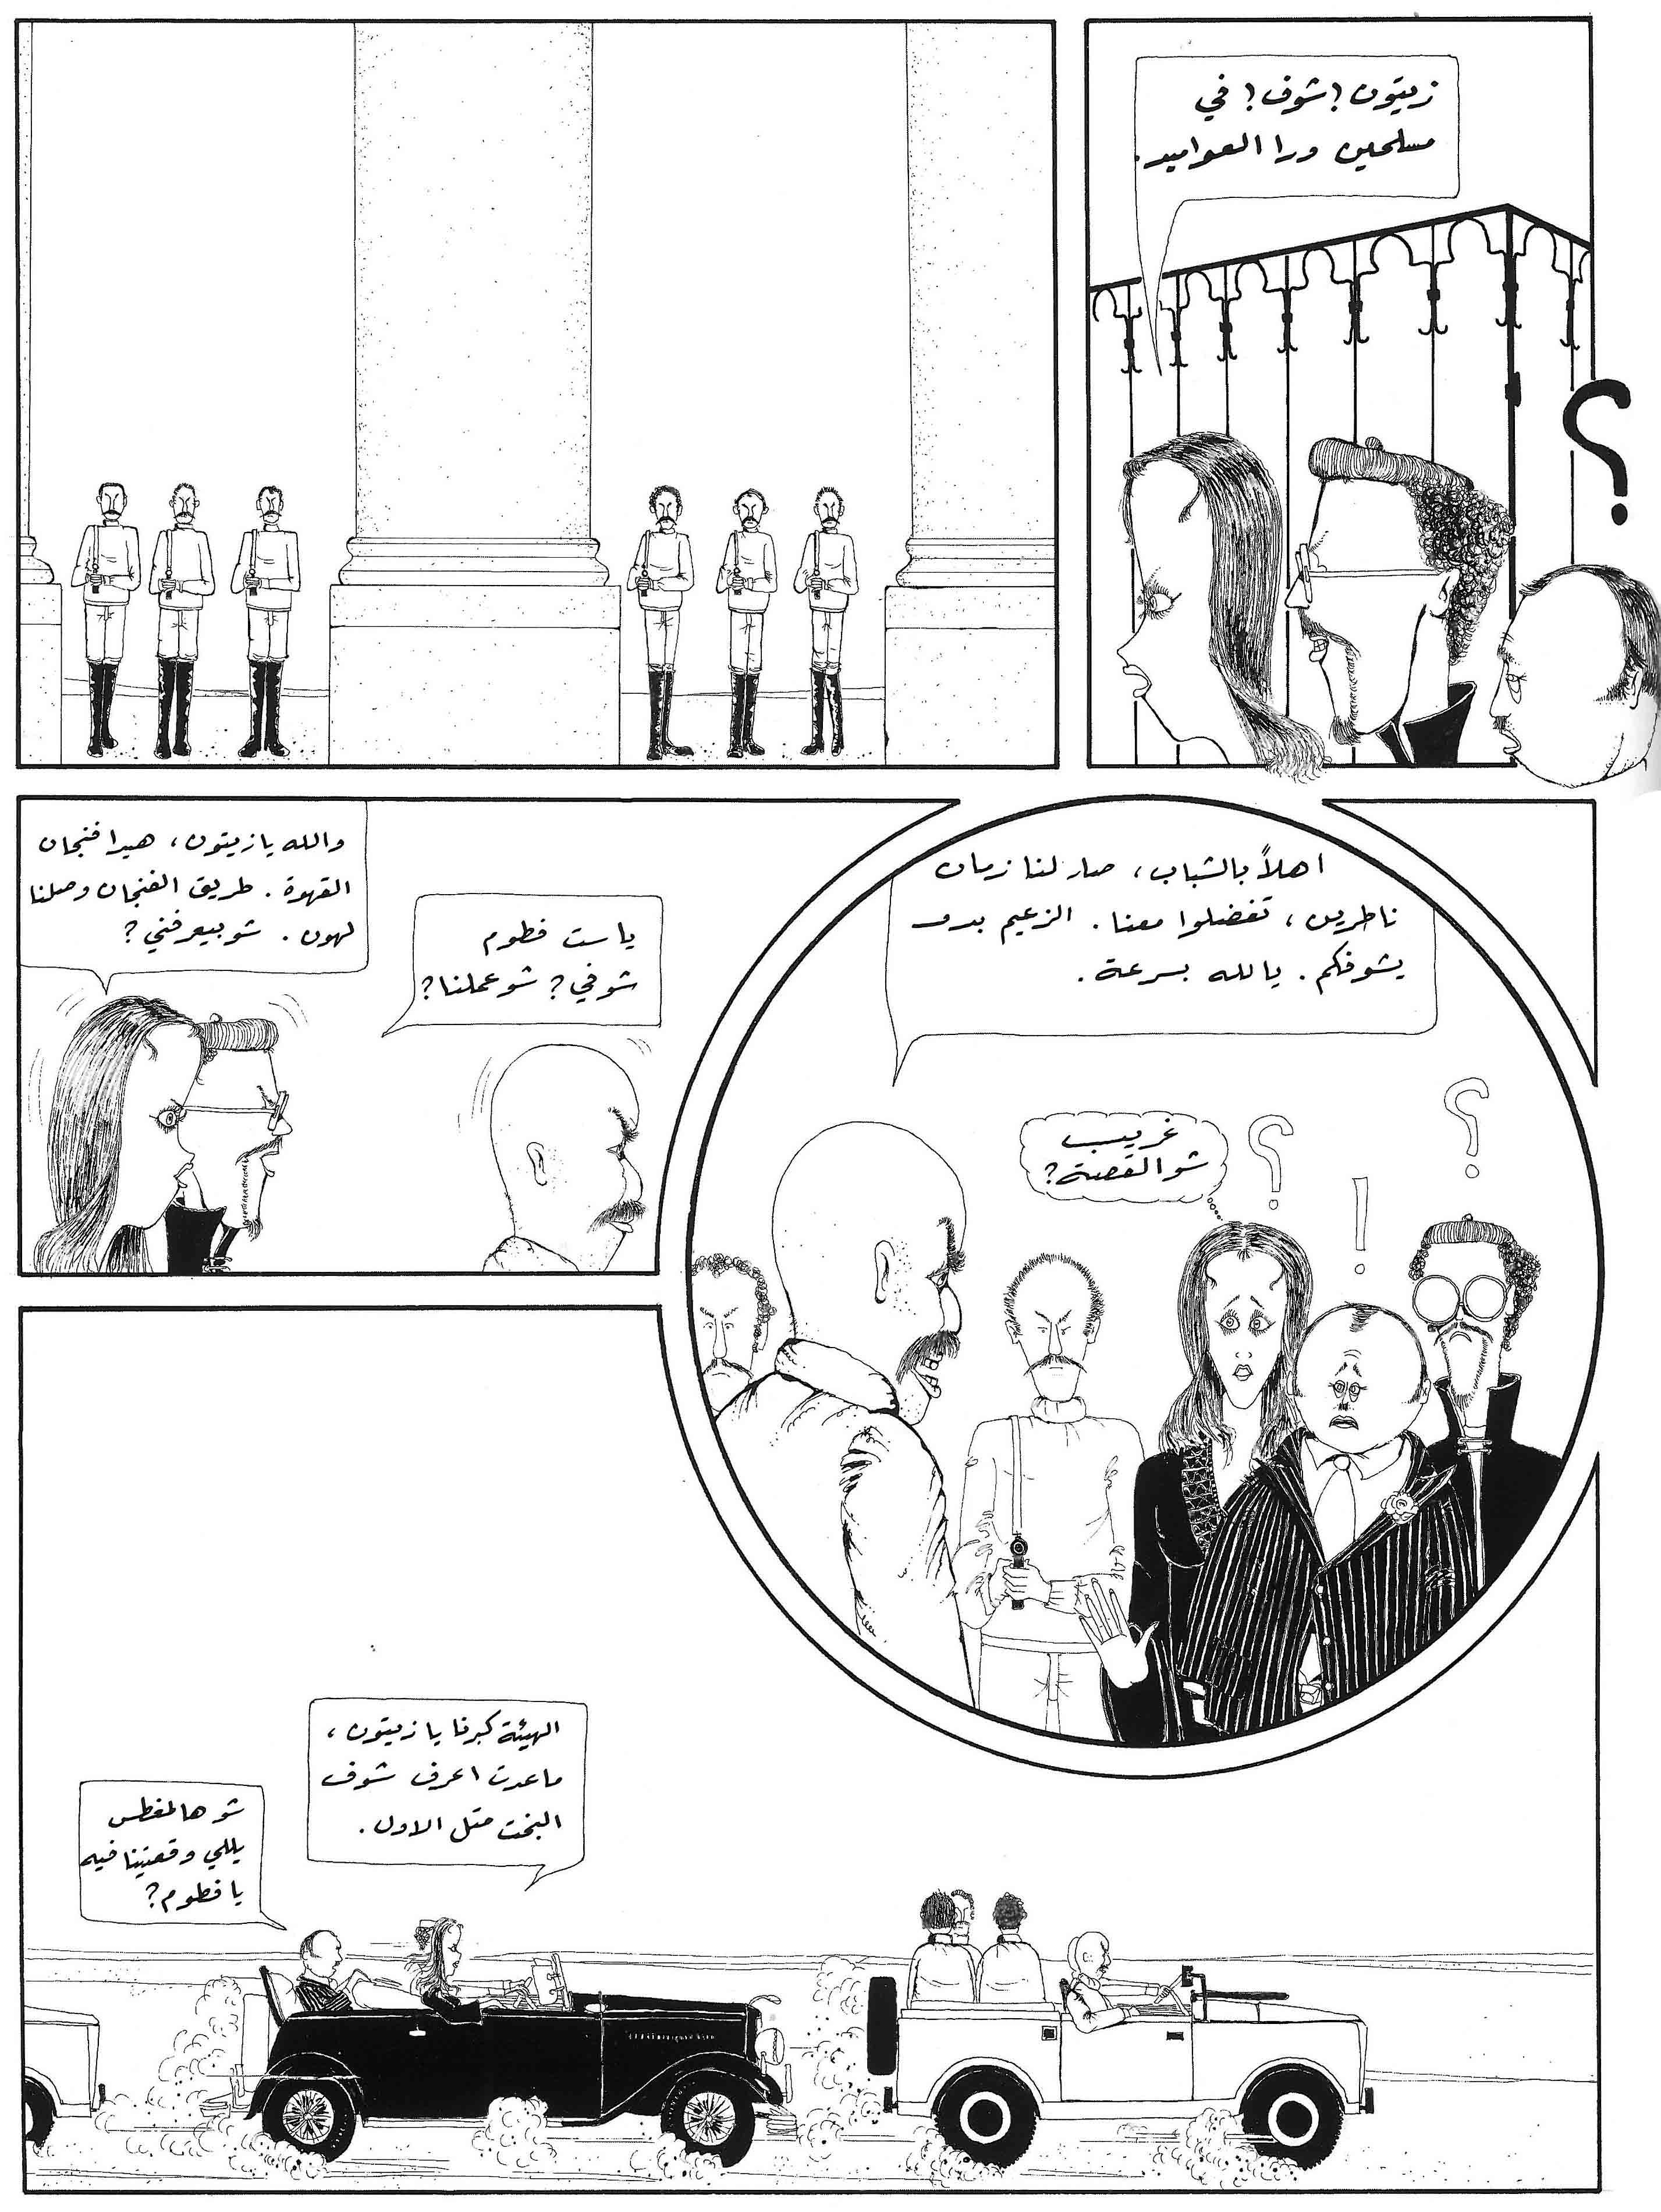 works_on_comics_in_Lebanon-5.jpg